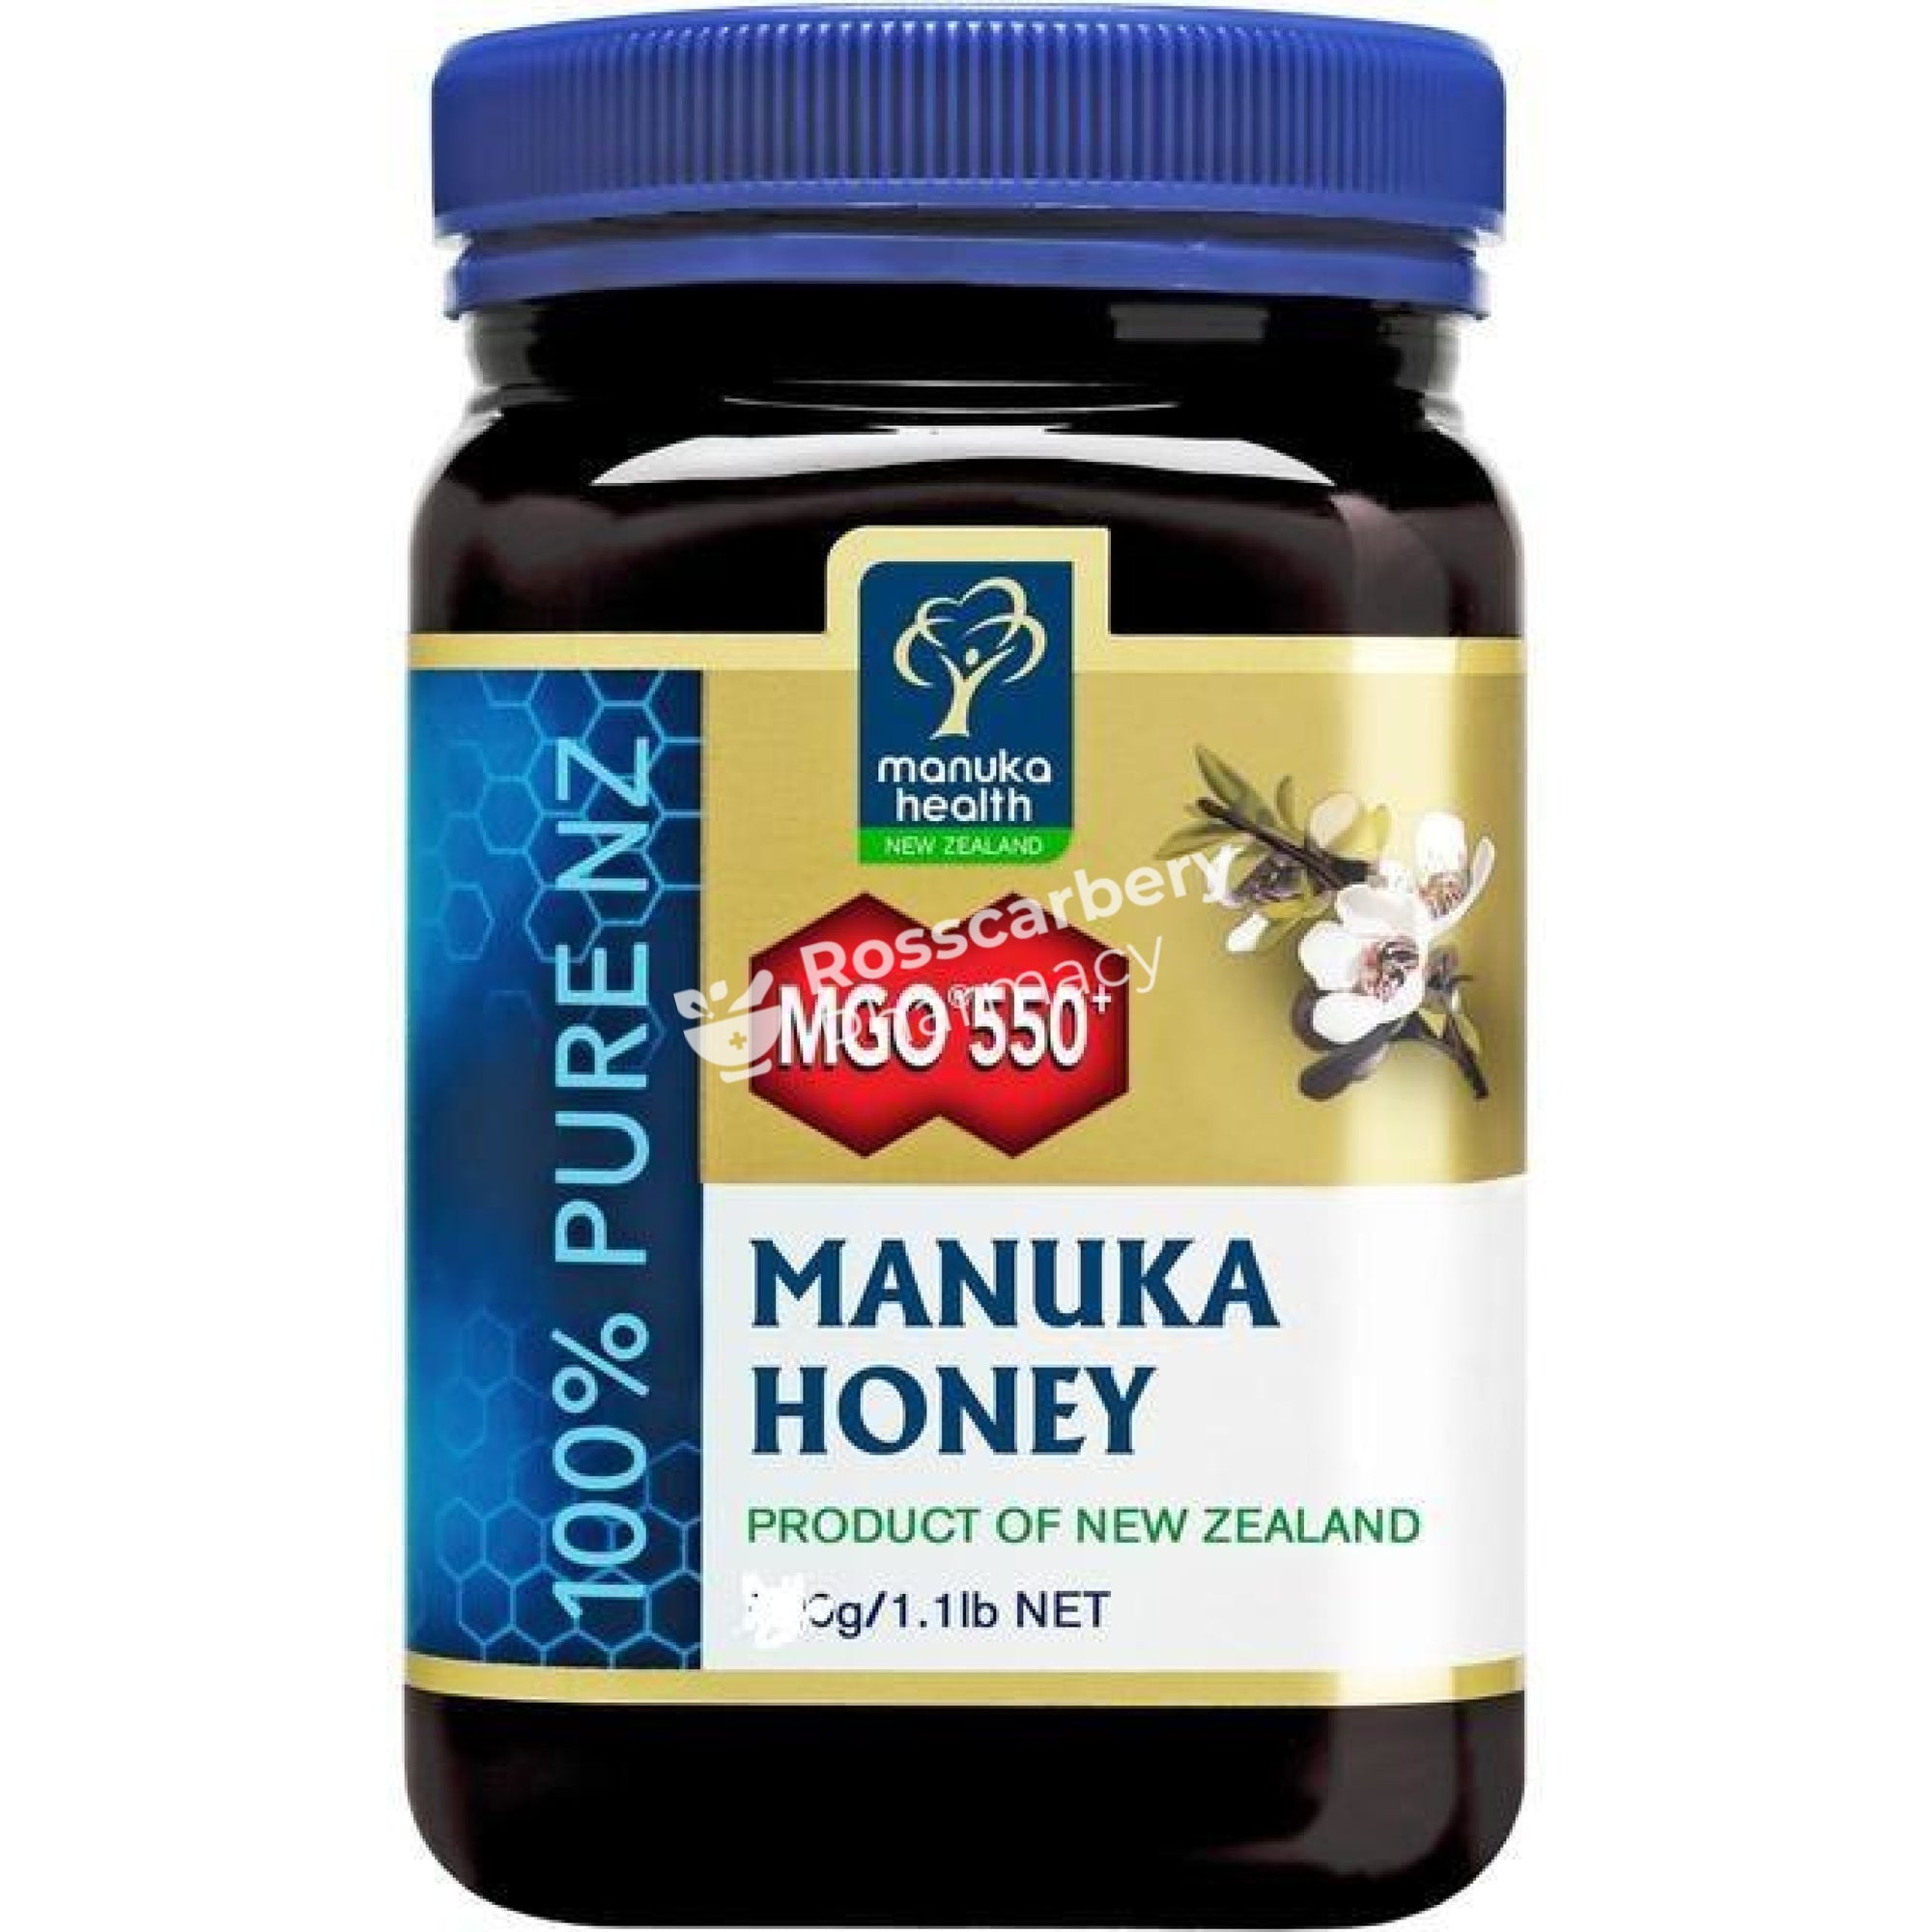 Manuka Honey Mgo 550+ Immune Support